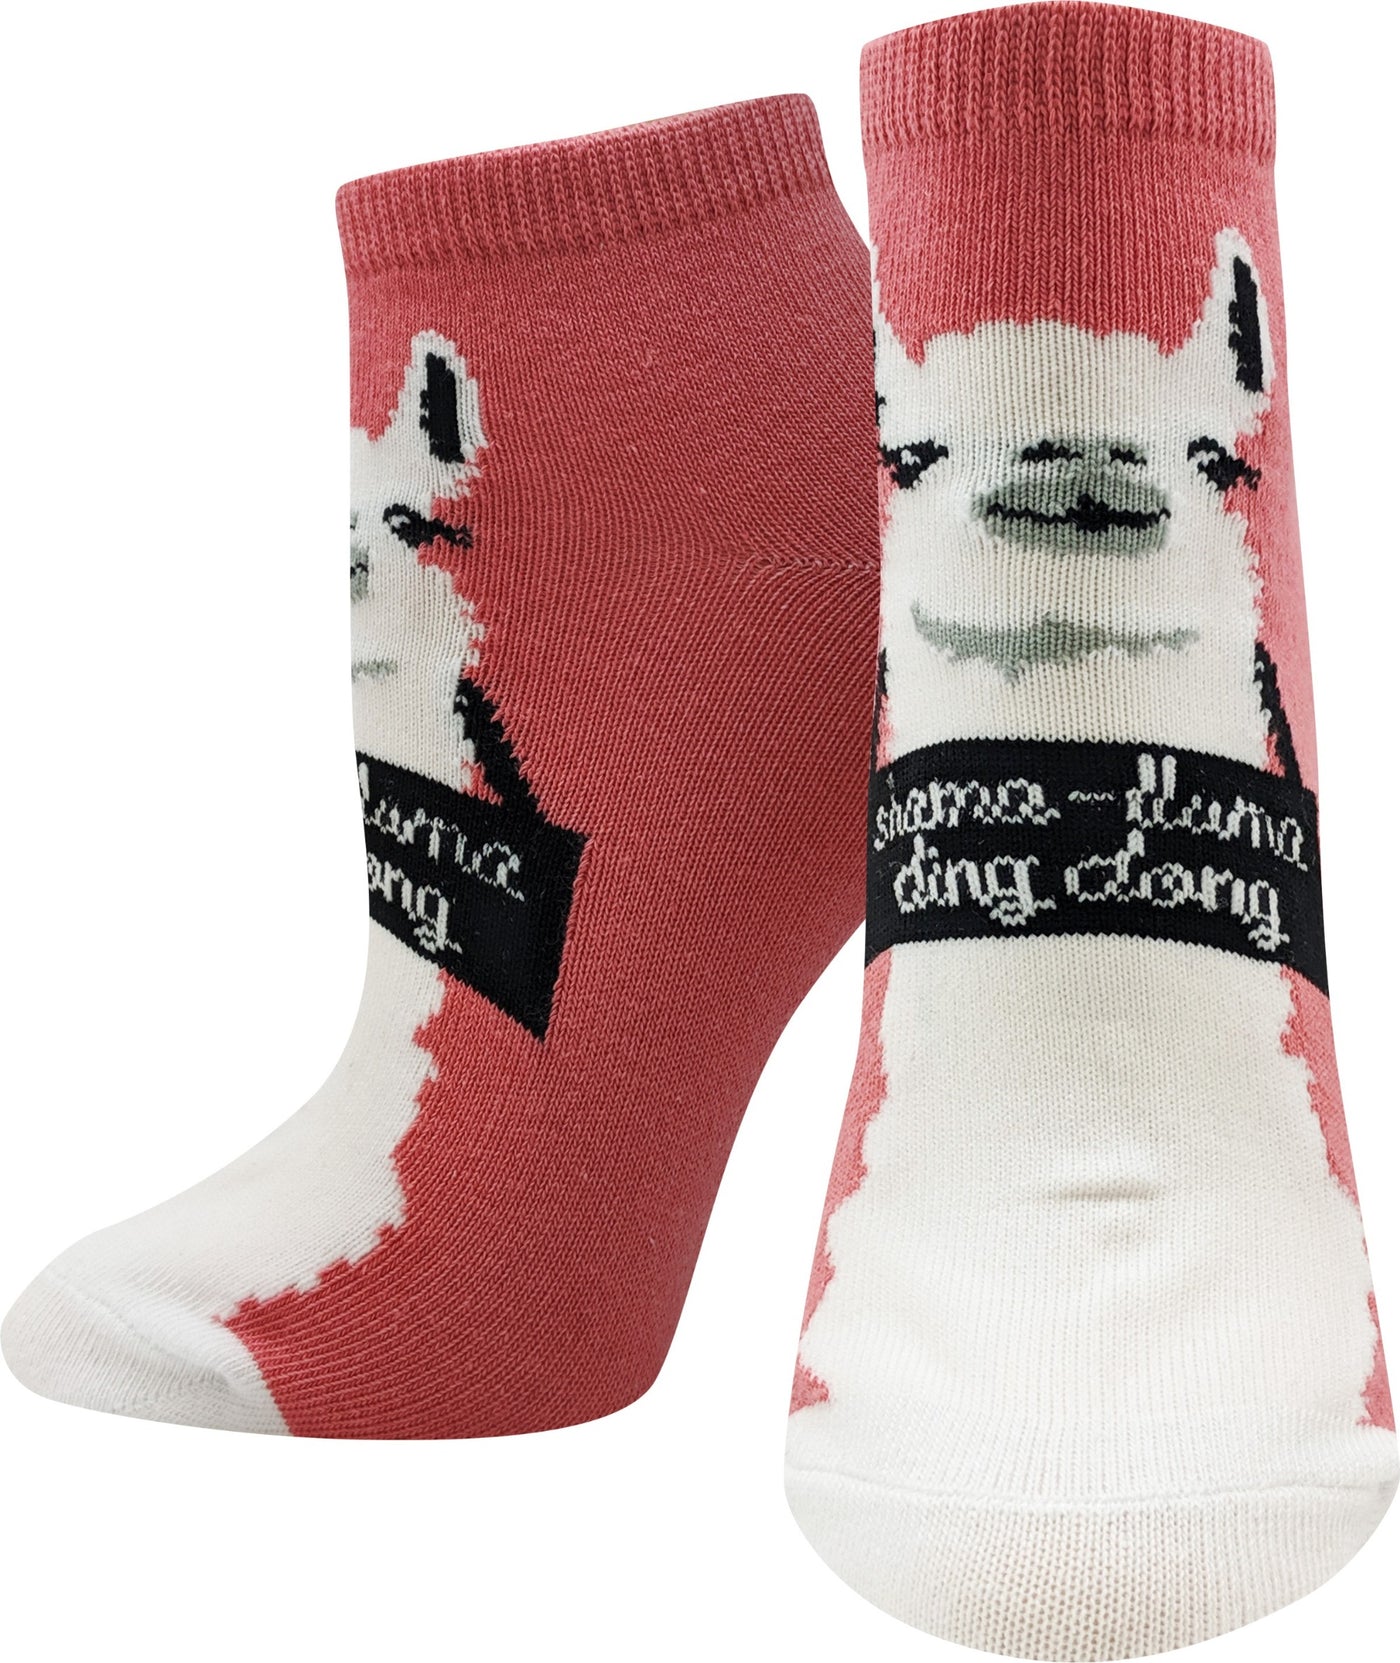 Shama Llama Ankle Socks